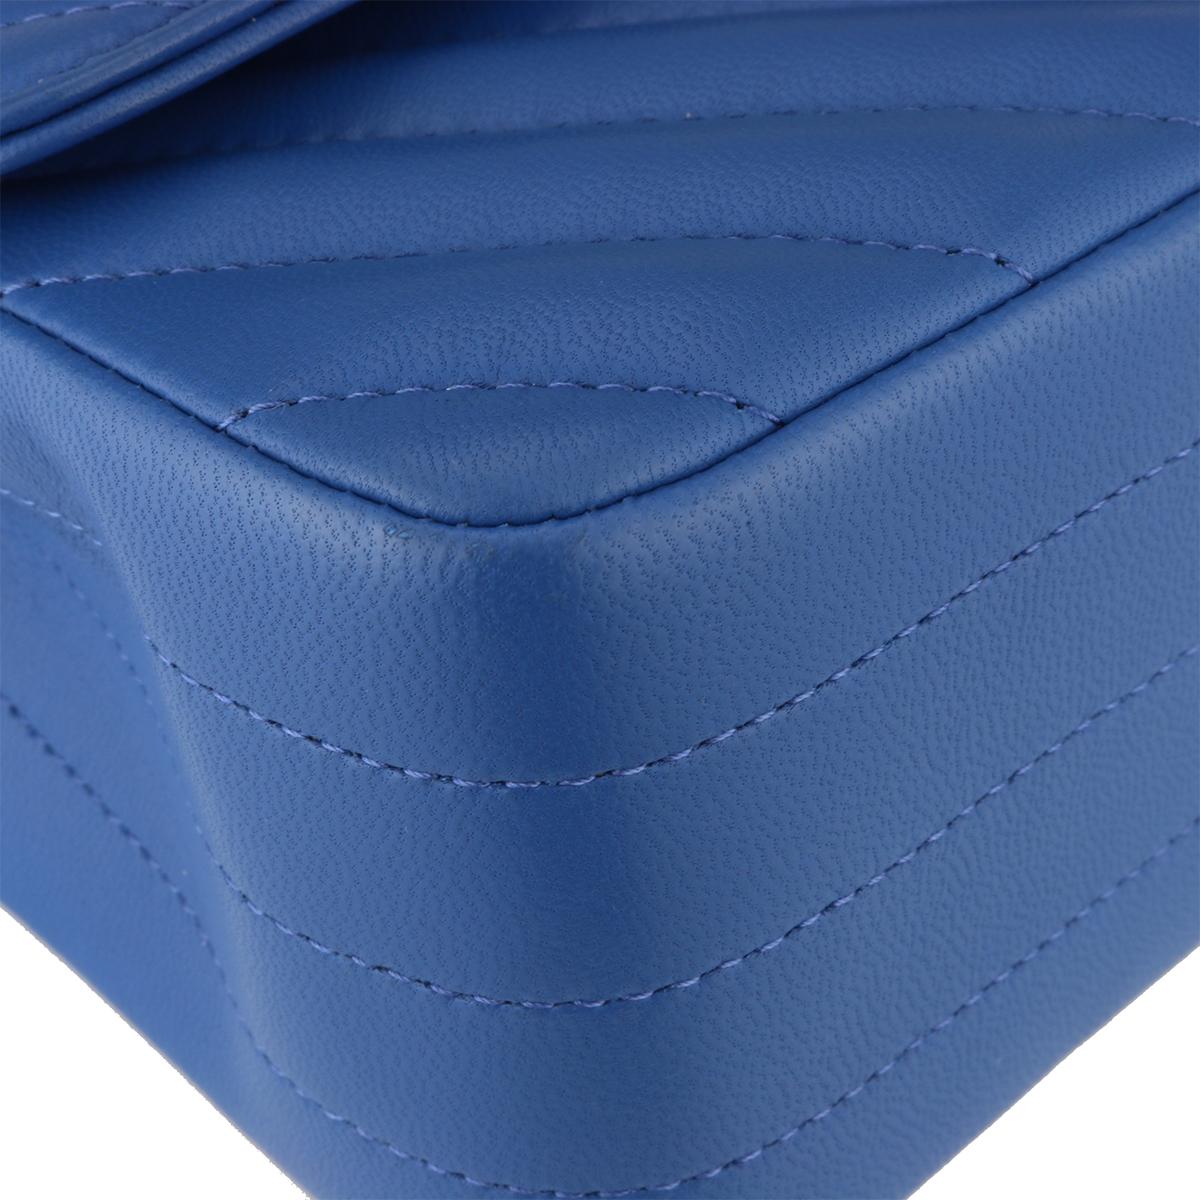 Women's or Men's CHANEL Rectangular Mini Bag Blue Chevron Lambskin with Light Gold Hardware 2019